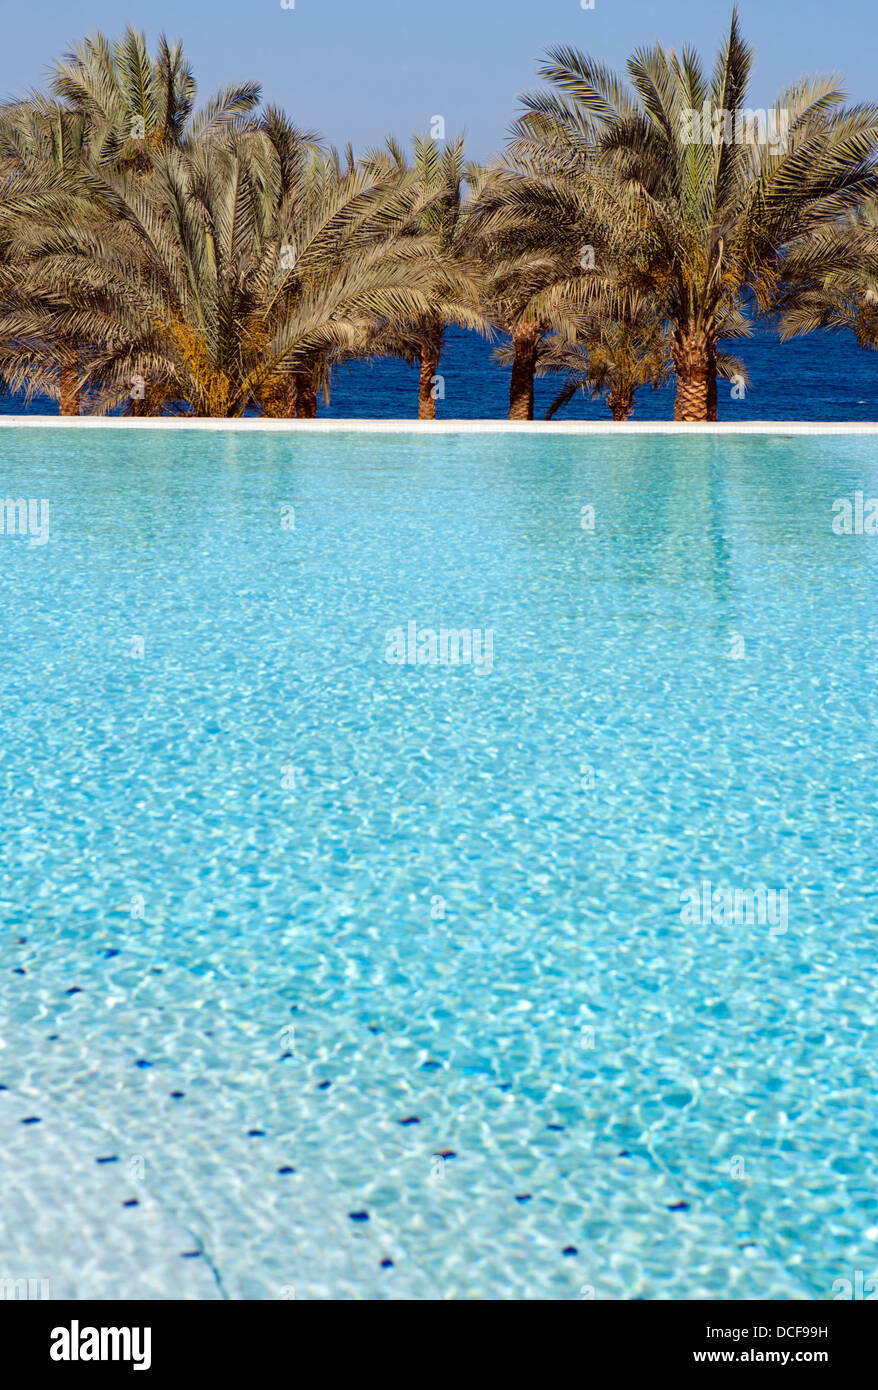 Messa a fuoco poco profonda immagine di una piscina infinity,palme & mar Rosso in Egitto Foto Stock